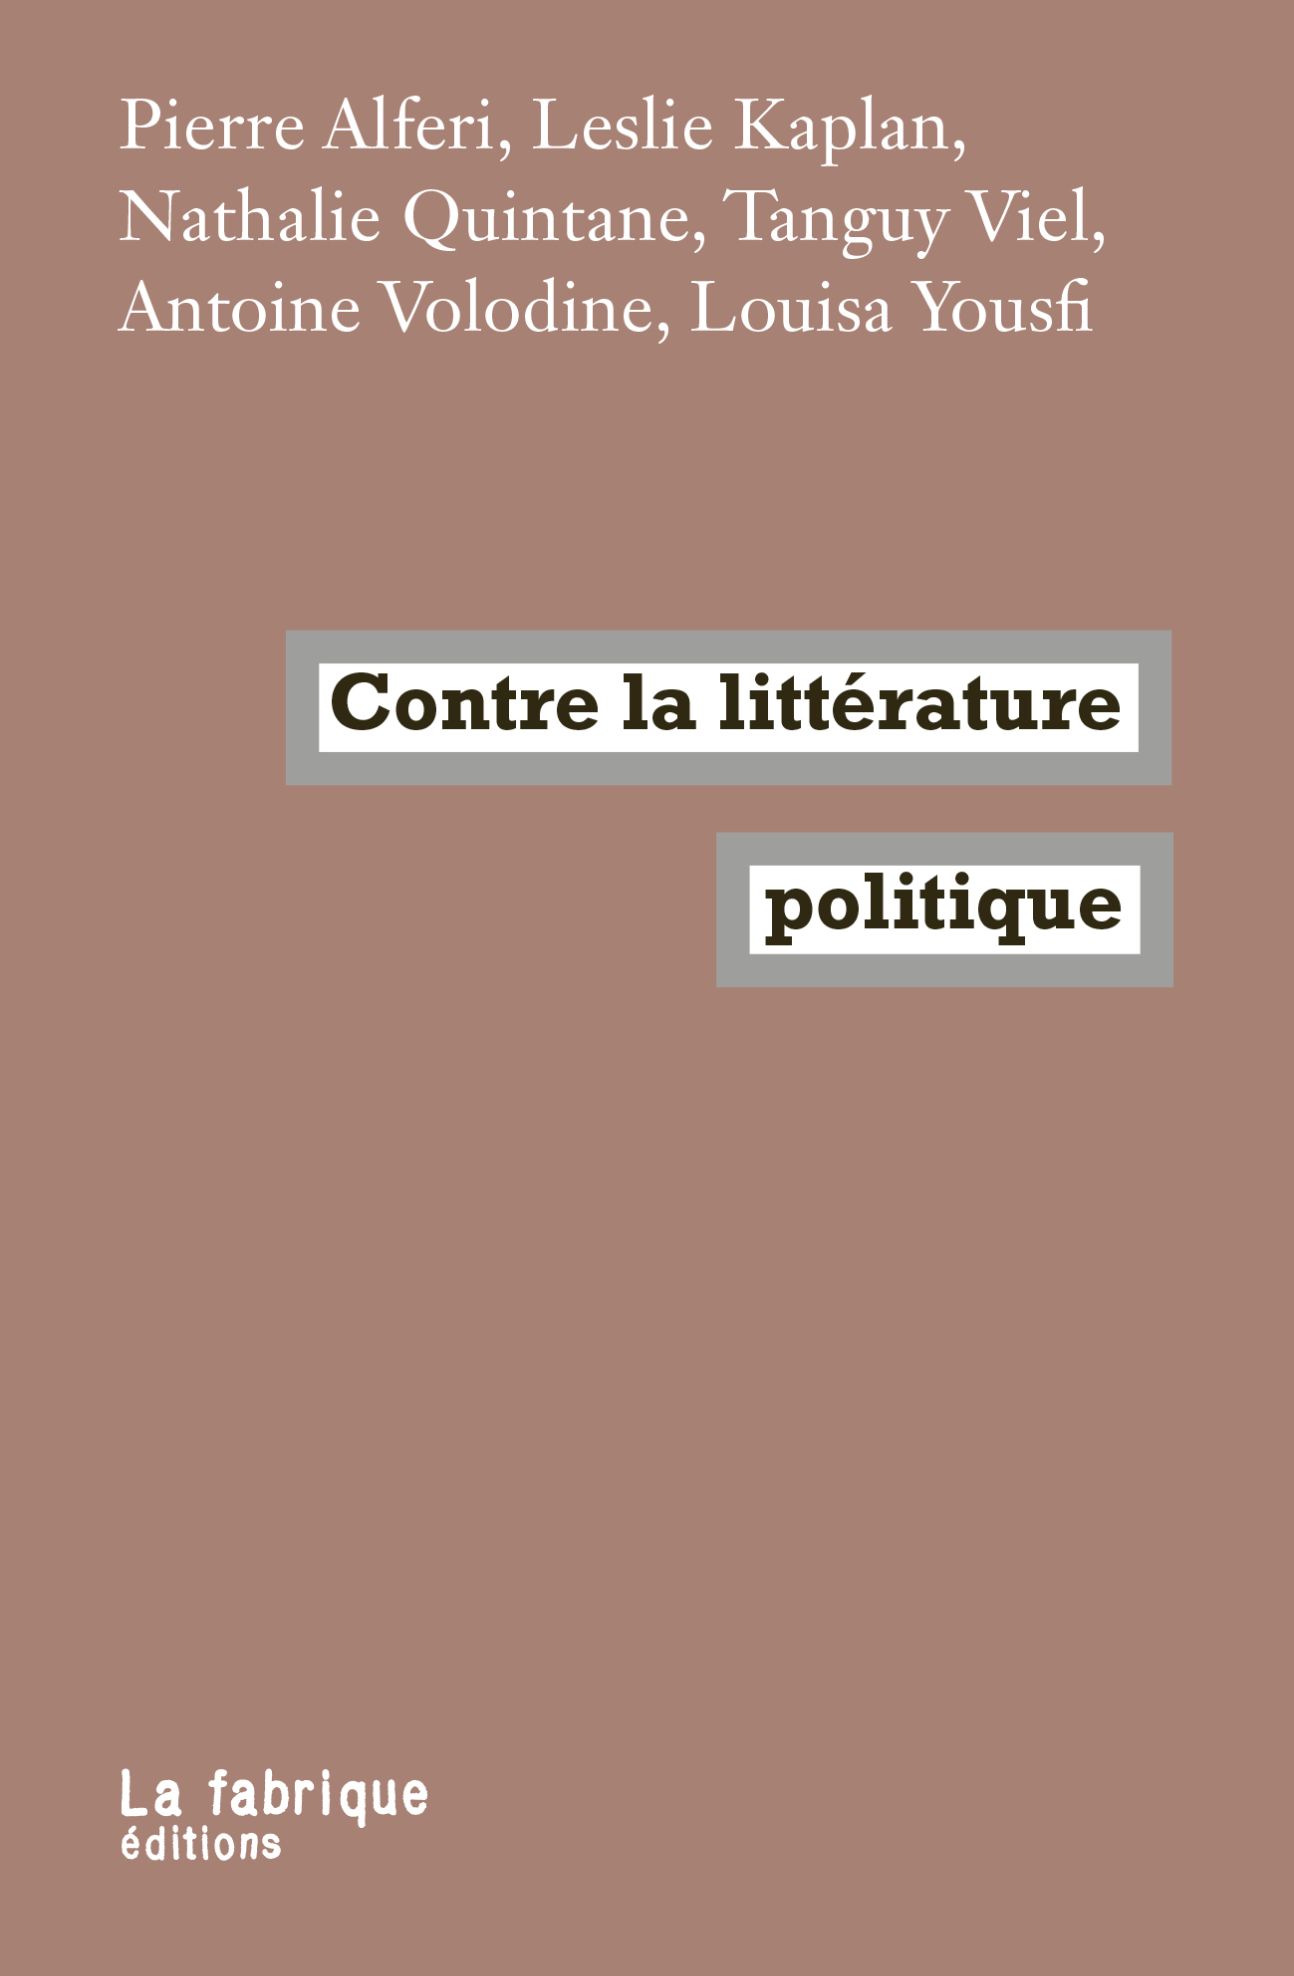 P. Alferi, L. Kaplan, N. Quintane, T. Viel, A. Volodine et L. Yousfi, Contre la littérature politique